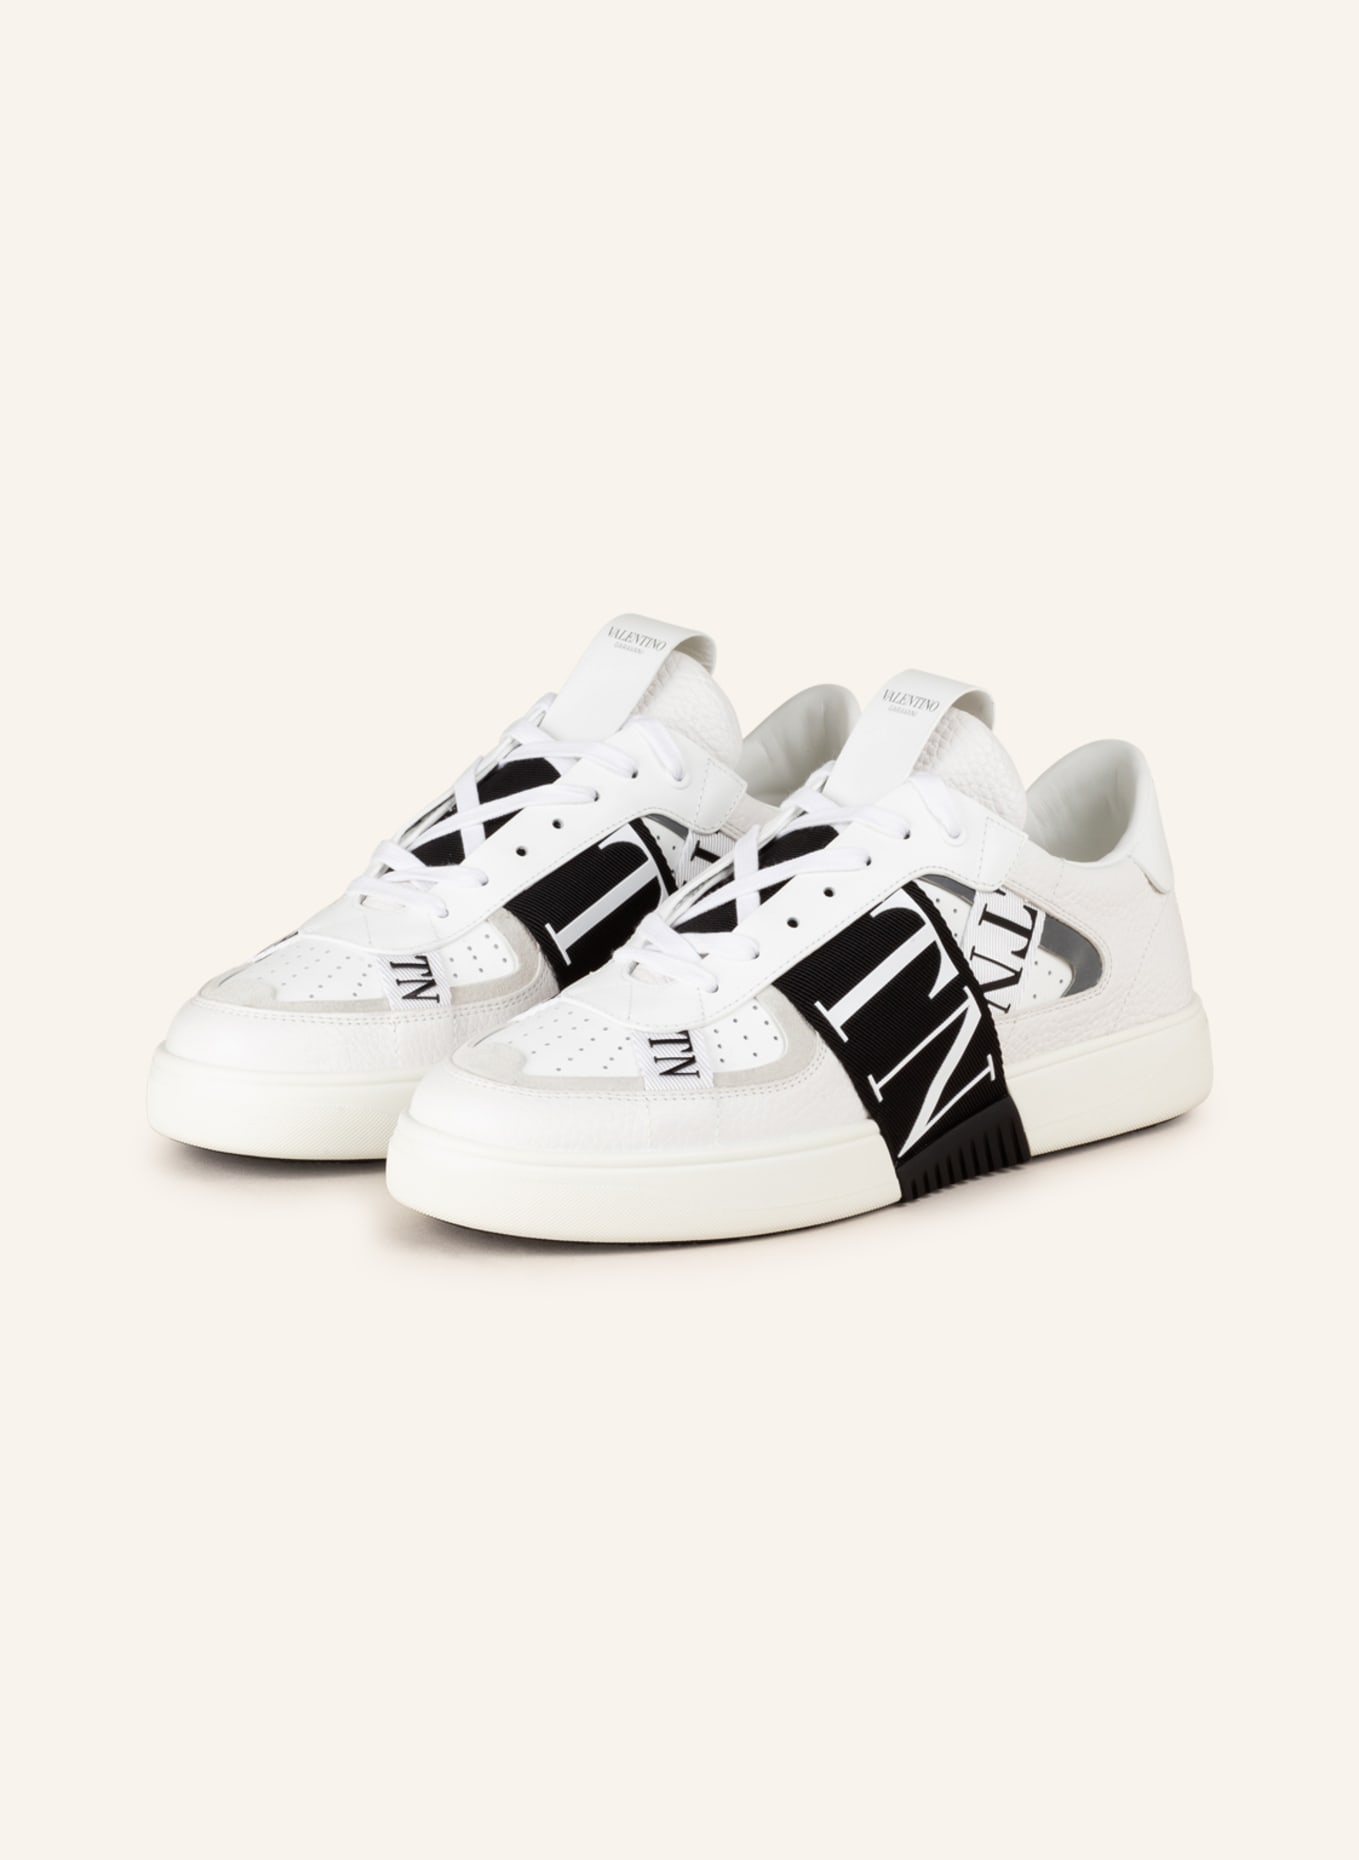 VALENTINO GARAVANI Sneakers in white/ black | Breuninger